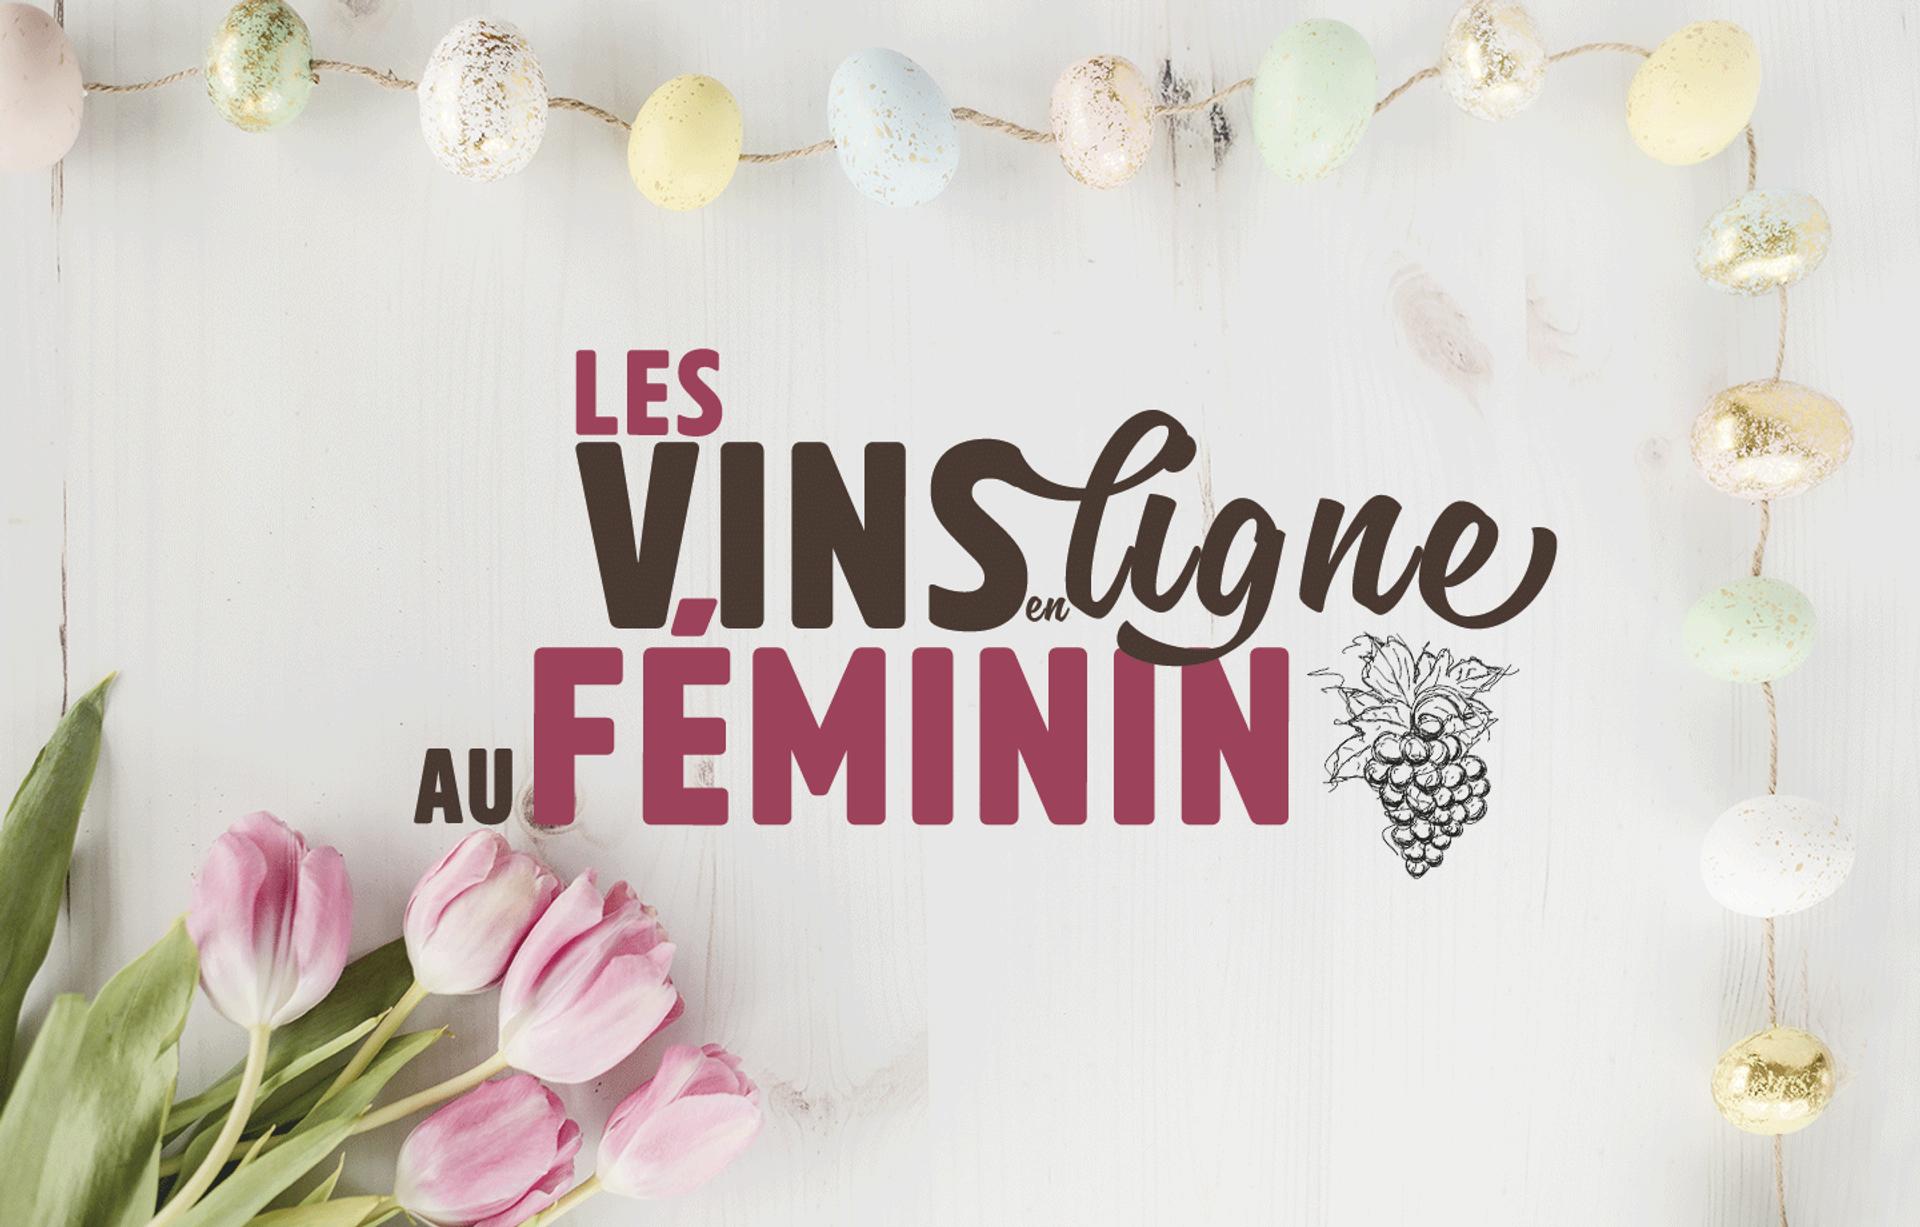 Les vins en ligne au féminin